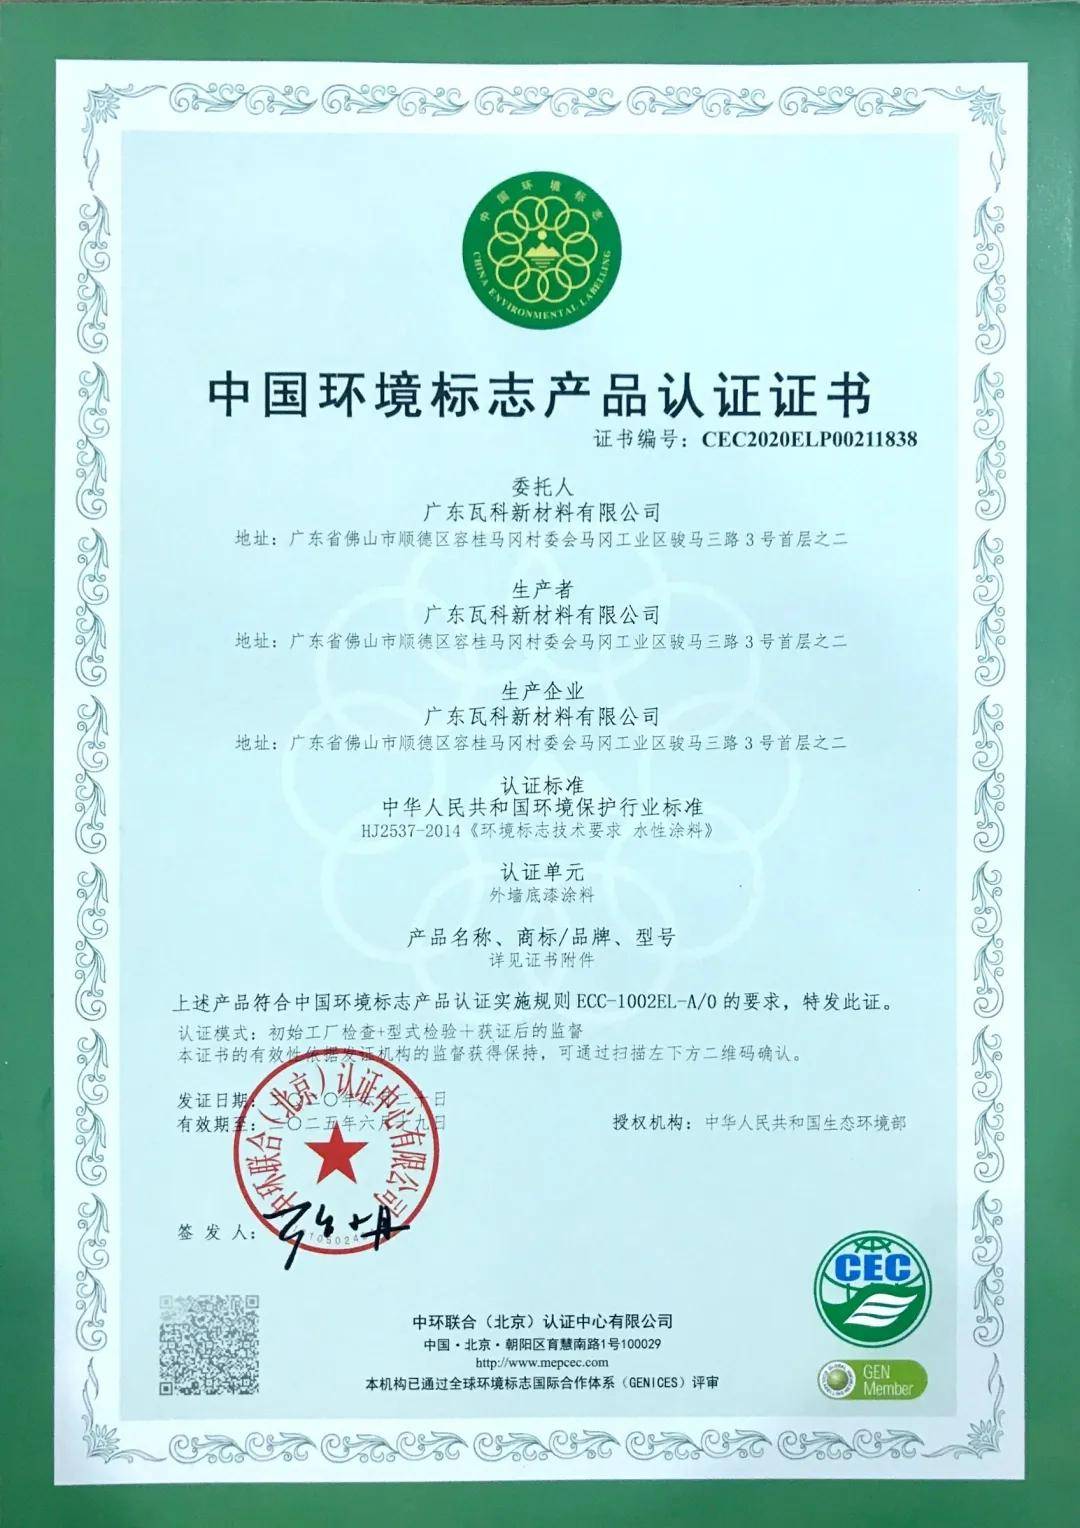 瓦科公司通过国家最高环保标准"十环认证"_产品